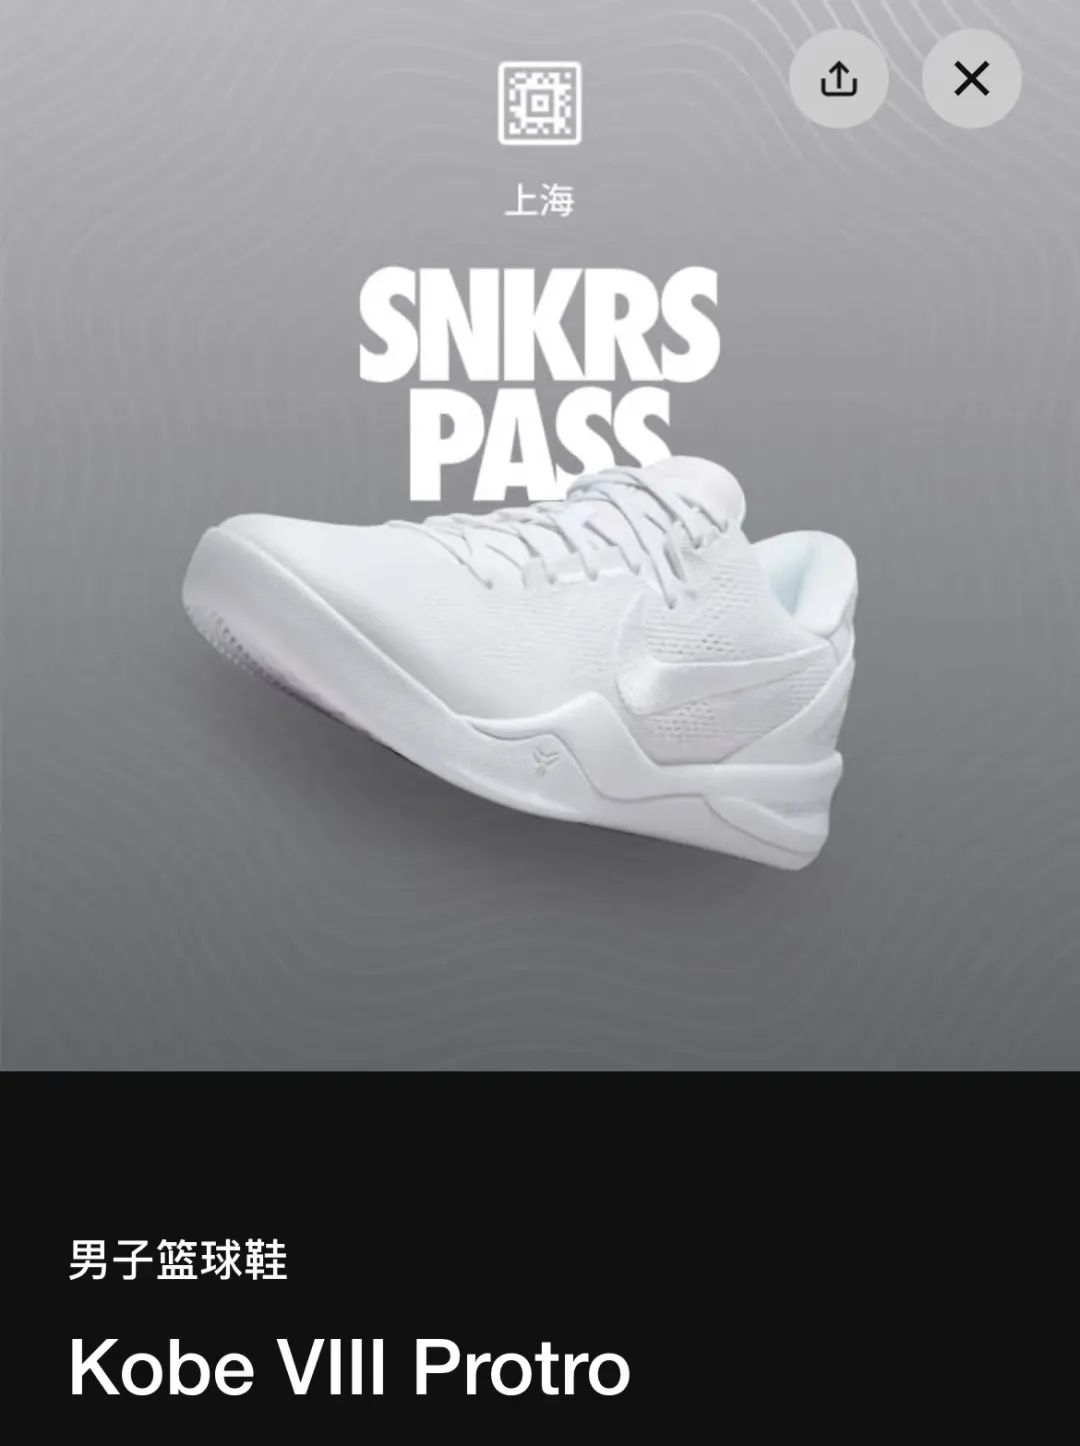 上海鞋区房「突袭PASS」！科比Kobe 8突袭发售了，市价2500！